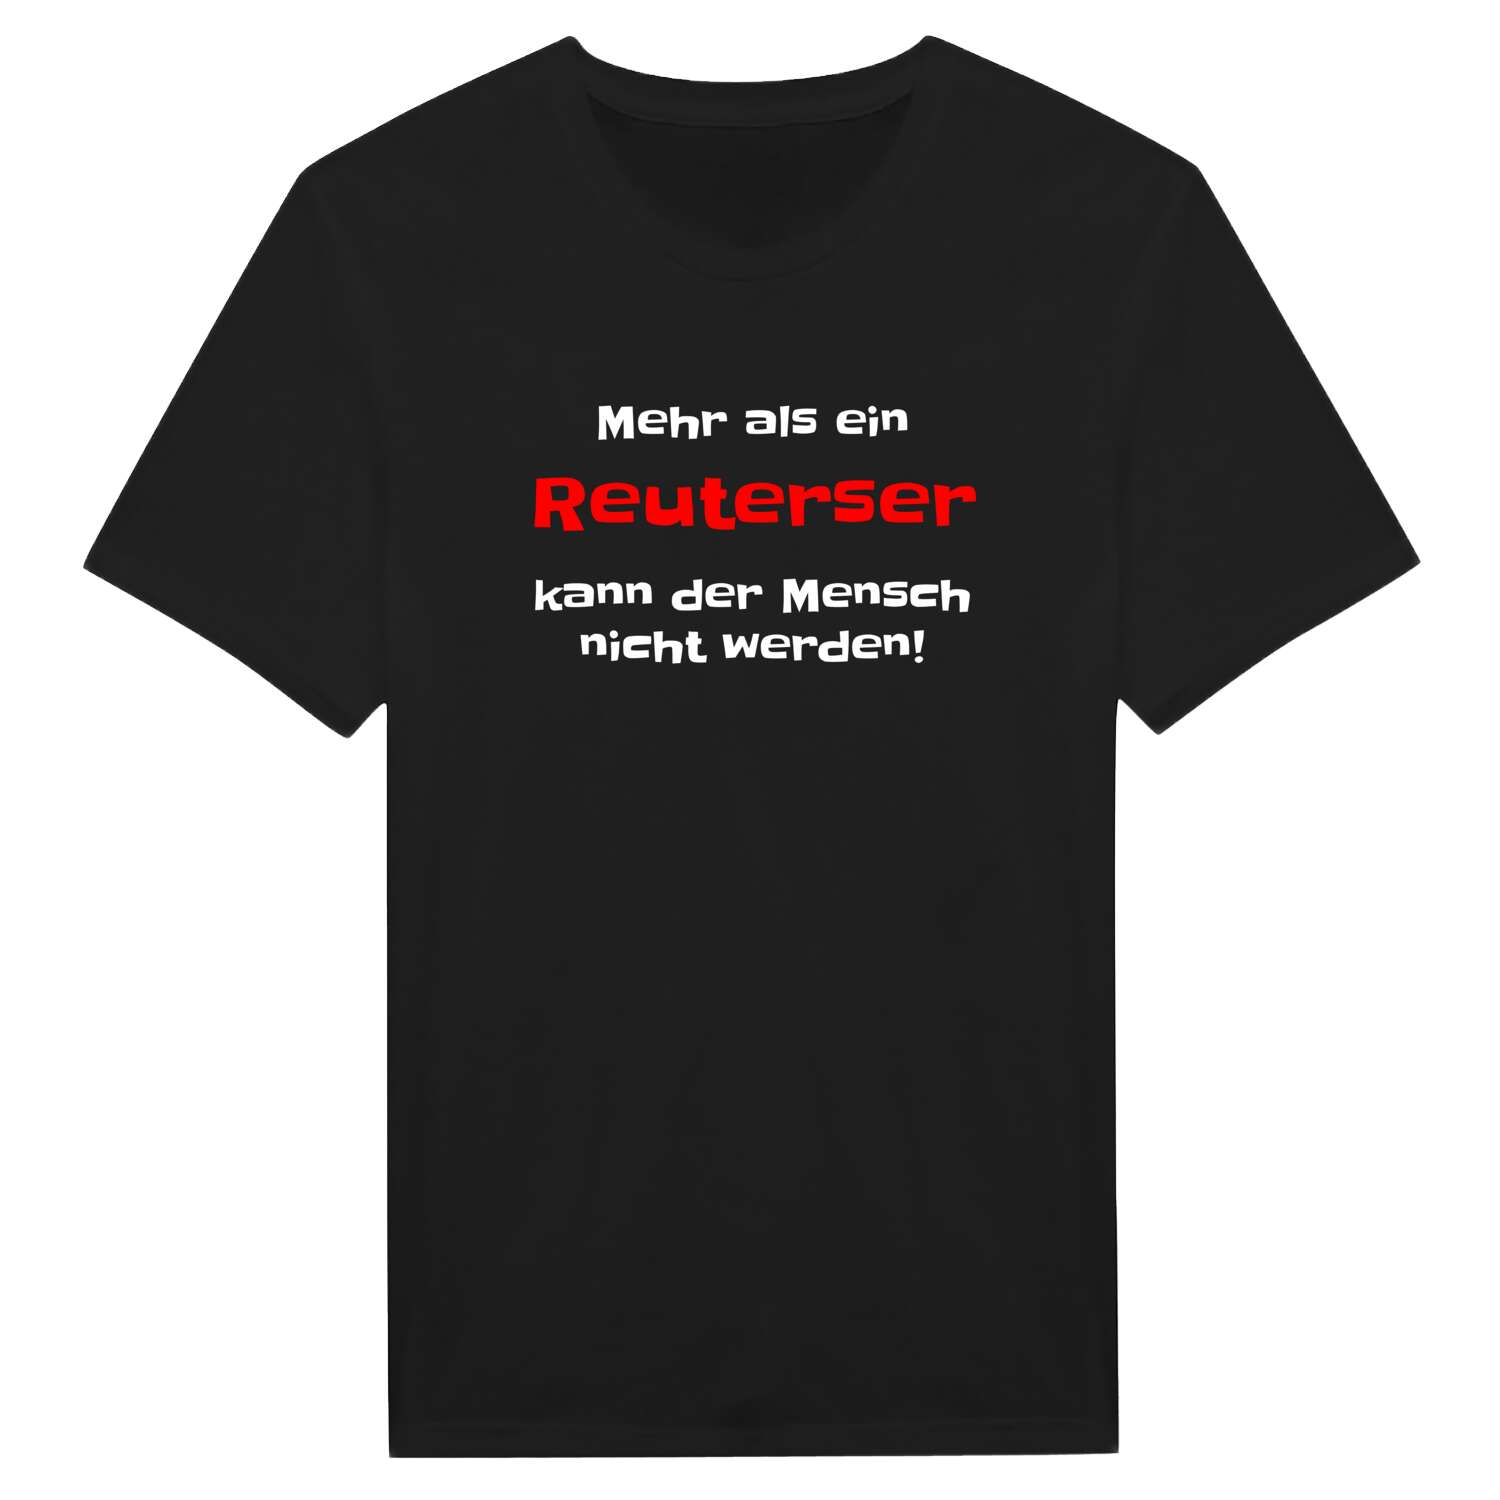 Reuters T-Shirt »Mehr als ein«